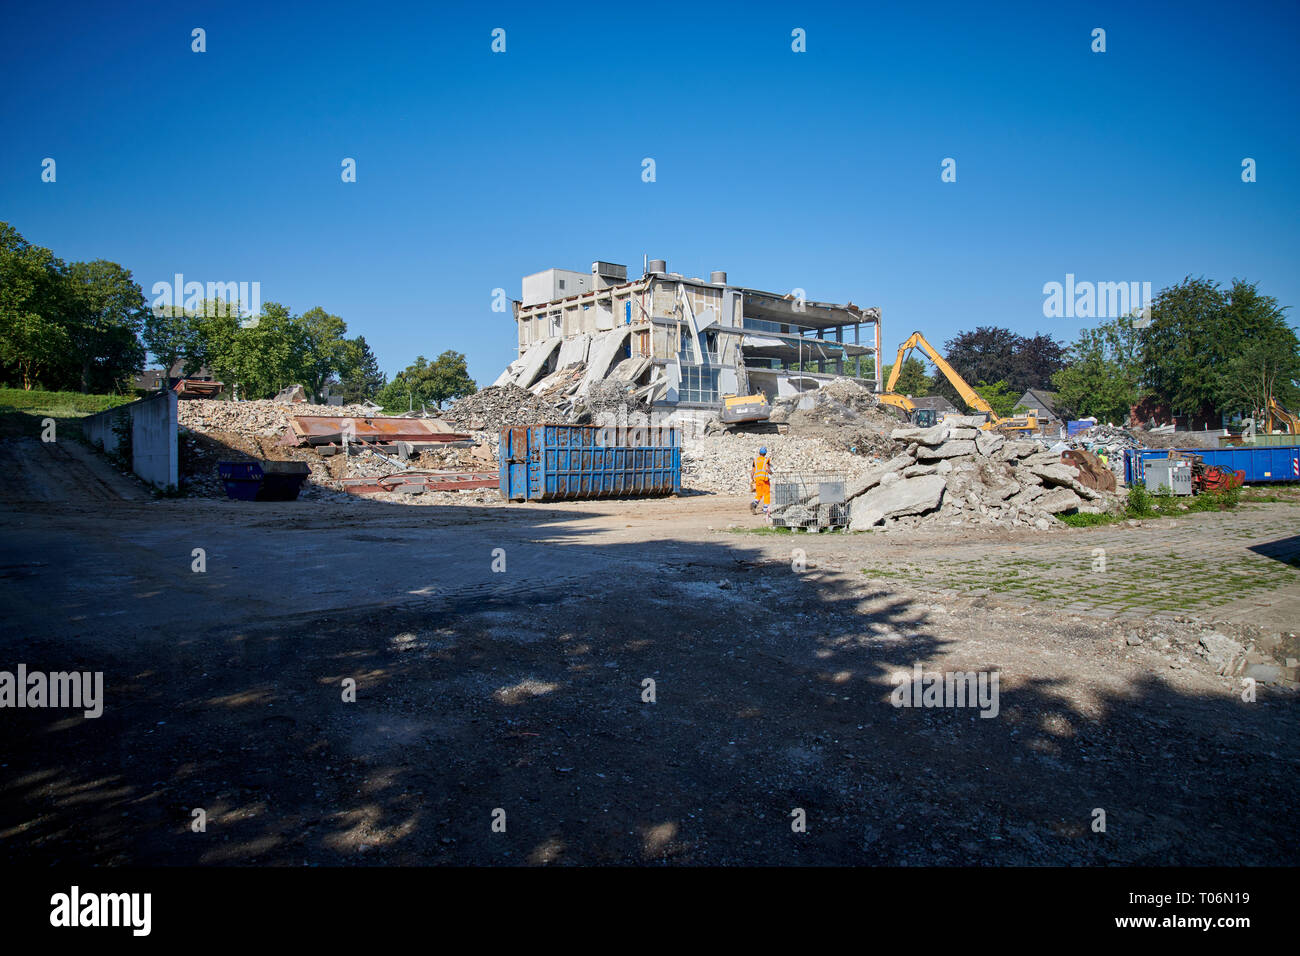 Ein ehemaliges Buerogebaede in Muelheim / Ruhr wird mit schwerem Geraet abgerissen. Der hintere Teil des Gebaedes ist von Sir Normen Foster geplant ge Foto Stock